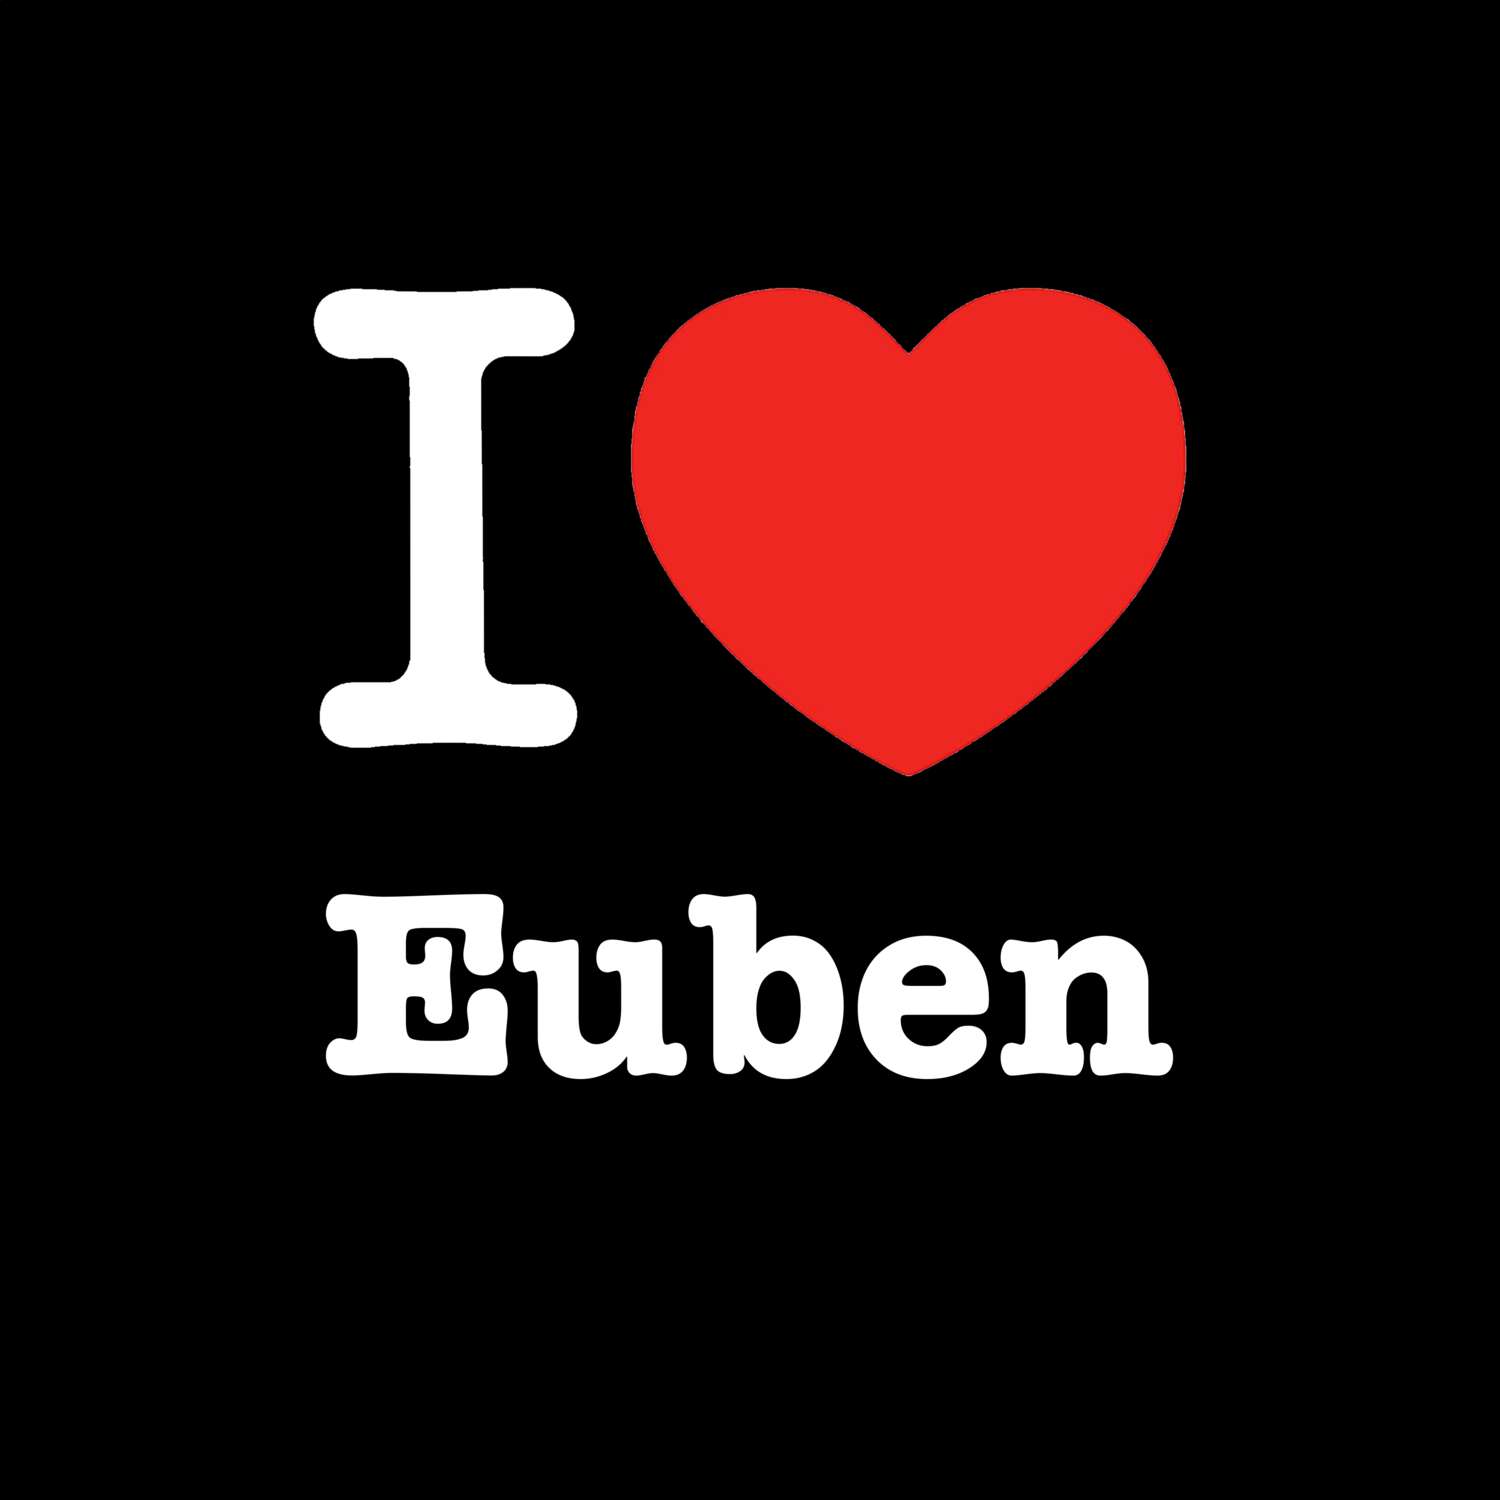 Euben T-Shirt »I love«